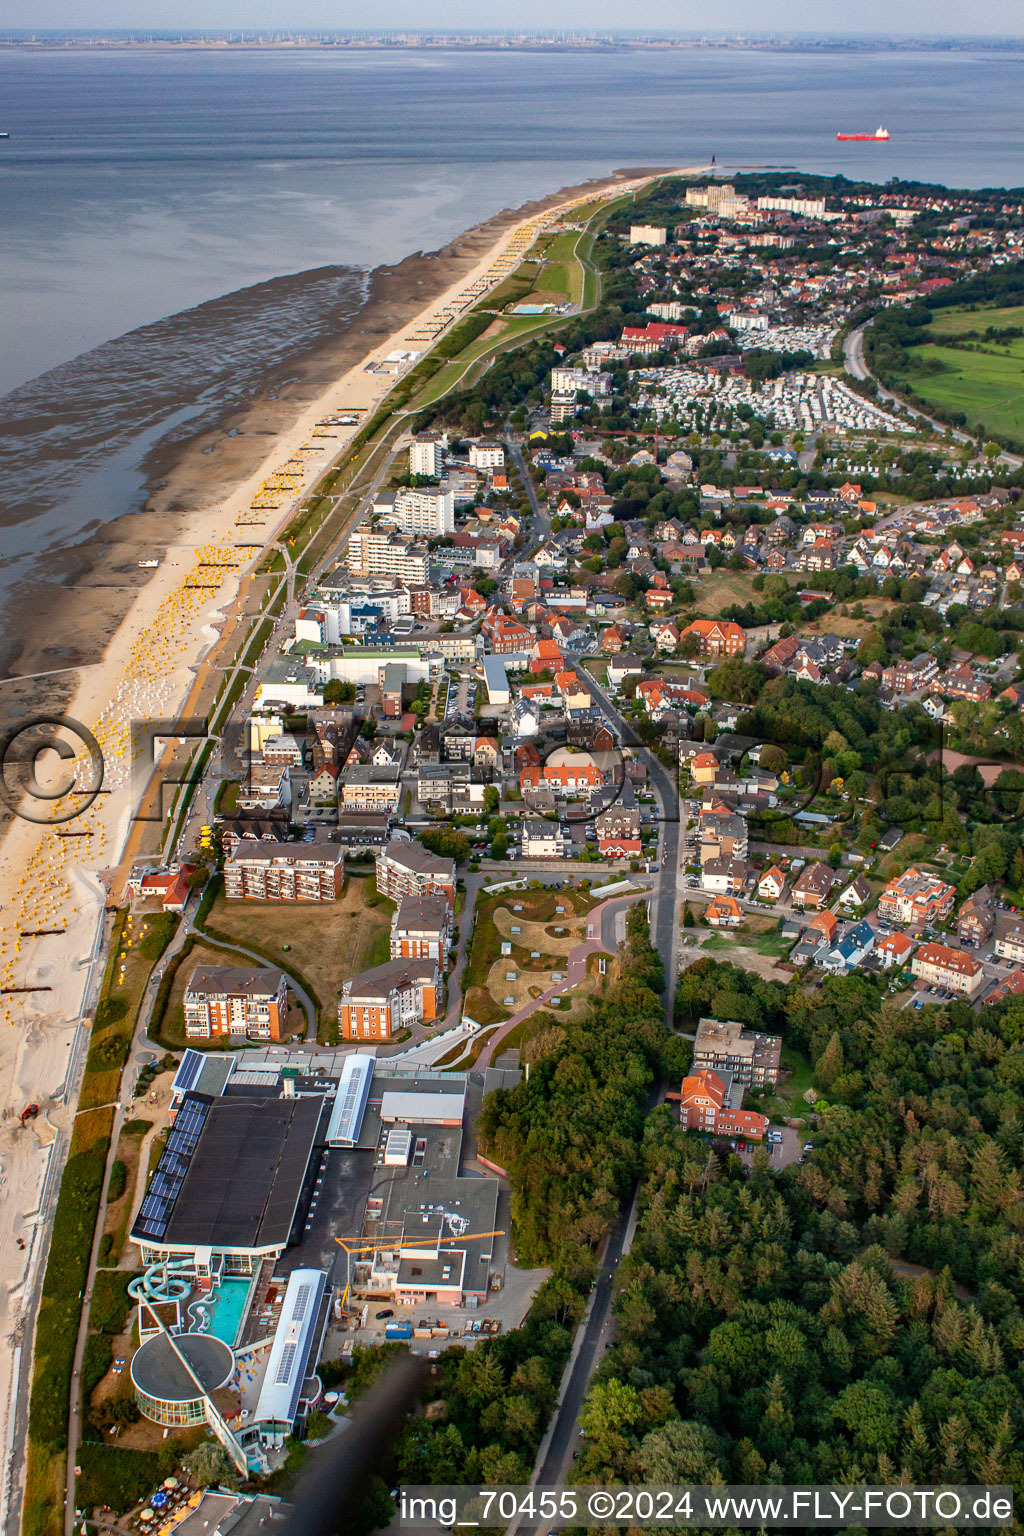 Luftbild von Thalassozentrum ahoi! im Ortsteil Duhnen in Cuxhaven im Bundesland Niedersachsen, Deutschland